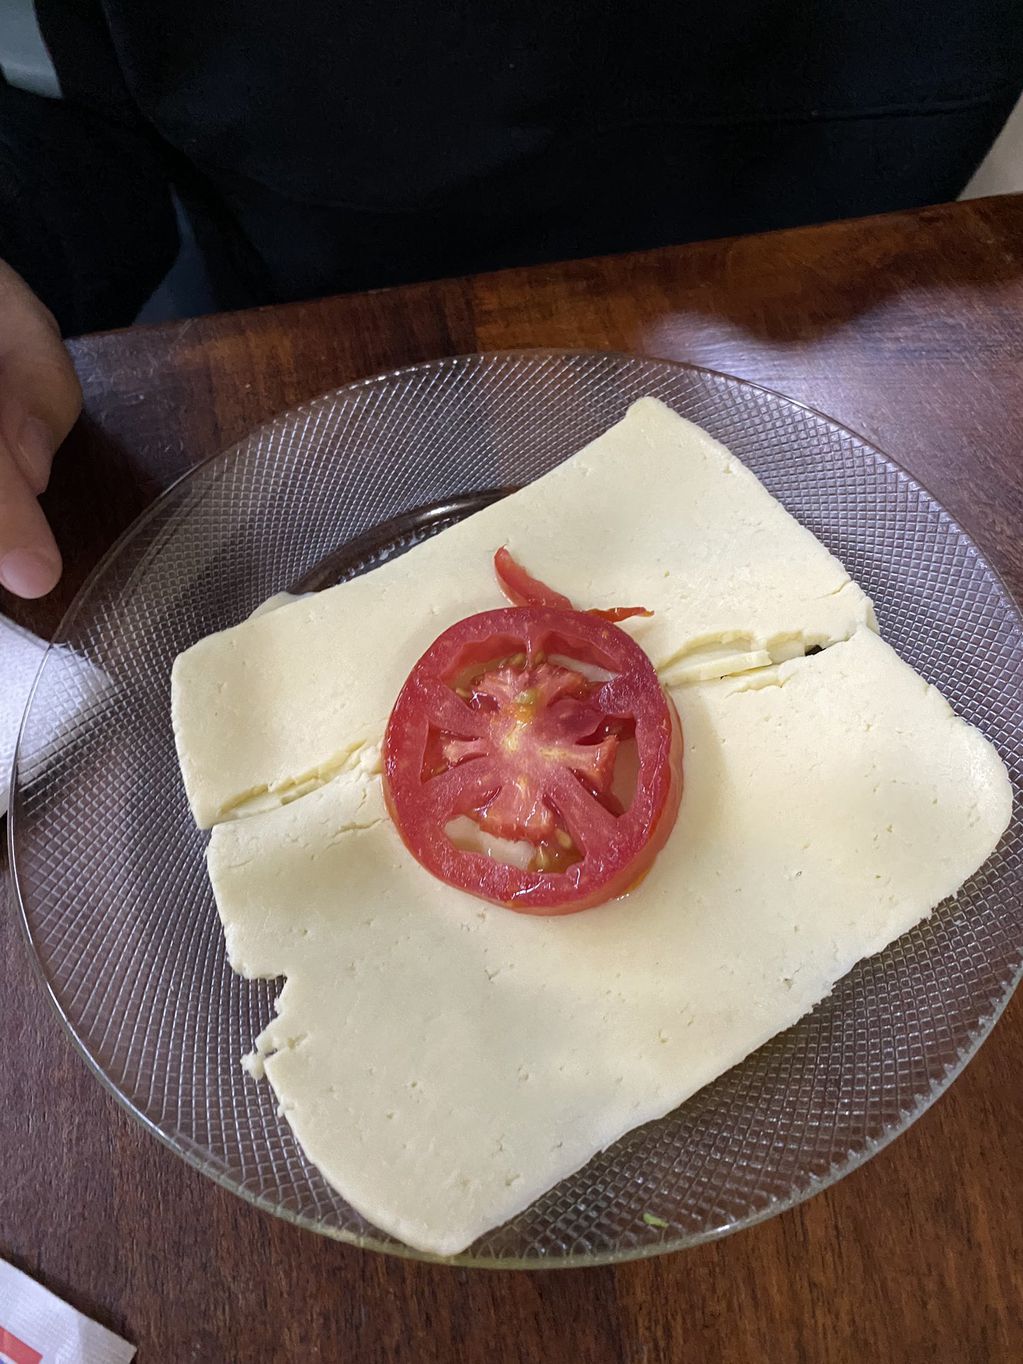 Es vegetariana, le sirvieron una feta de queso con tomate de entrada y se volvió viral